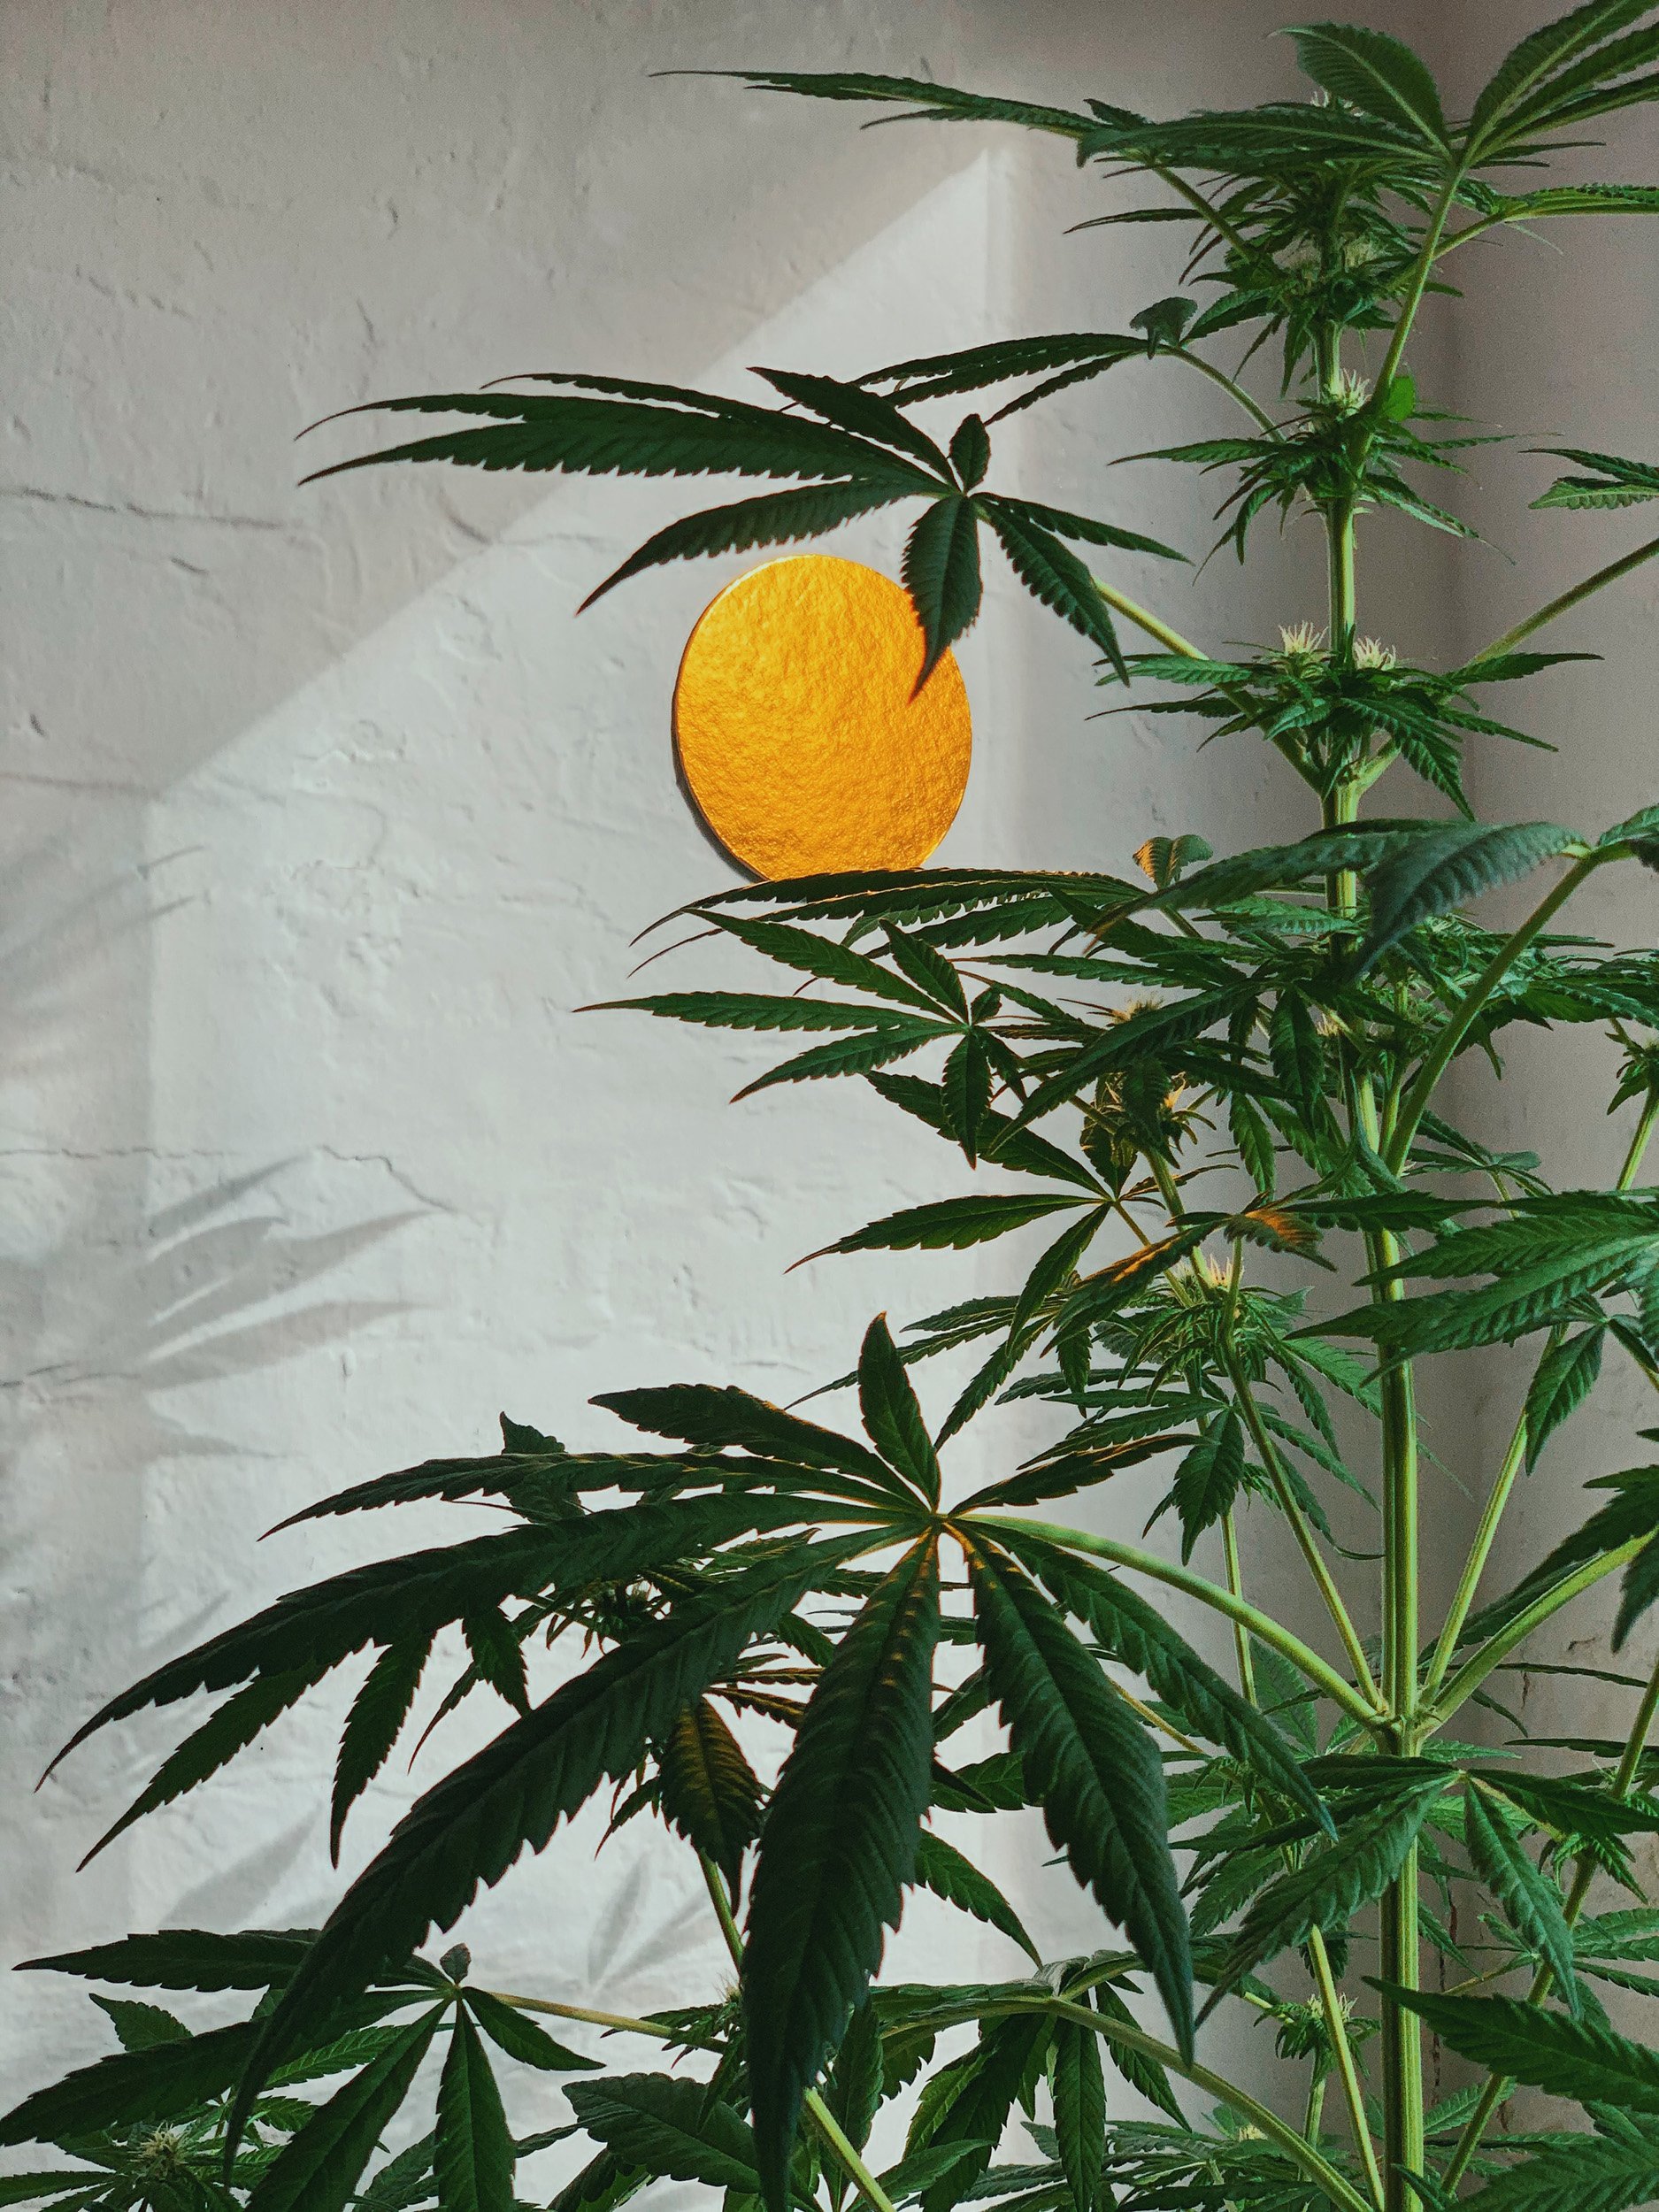 Cannabispflanze: ein praktischer Cannabis-Überblick